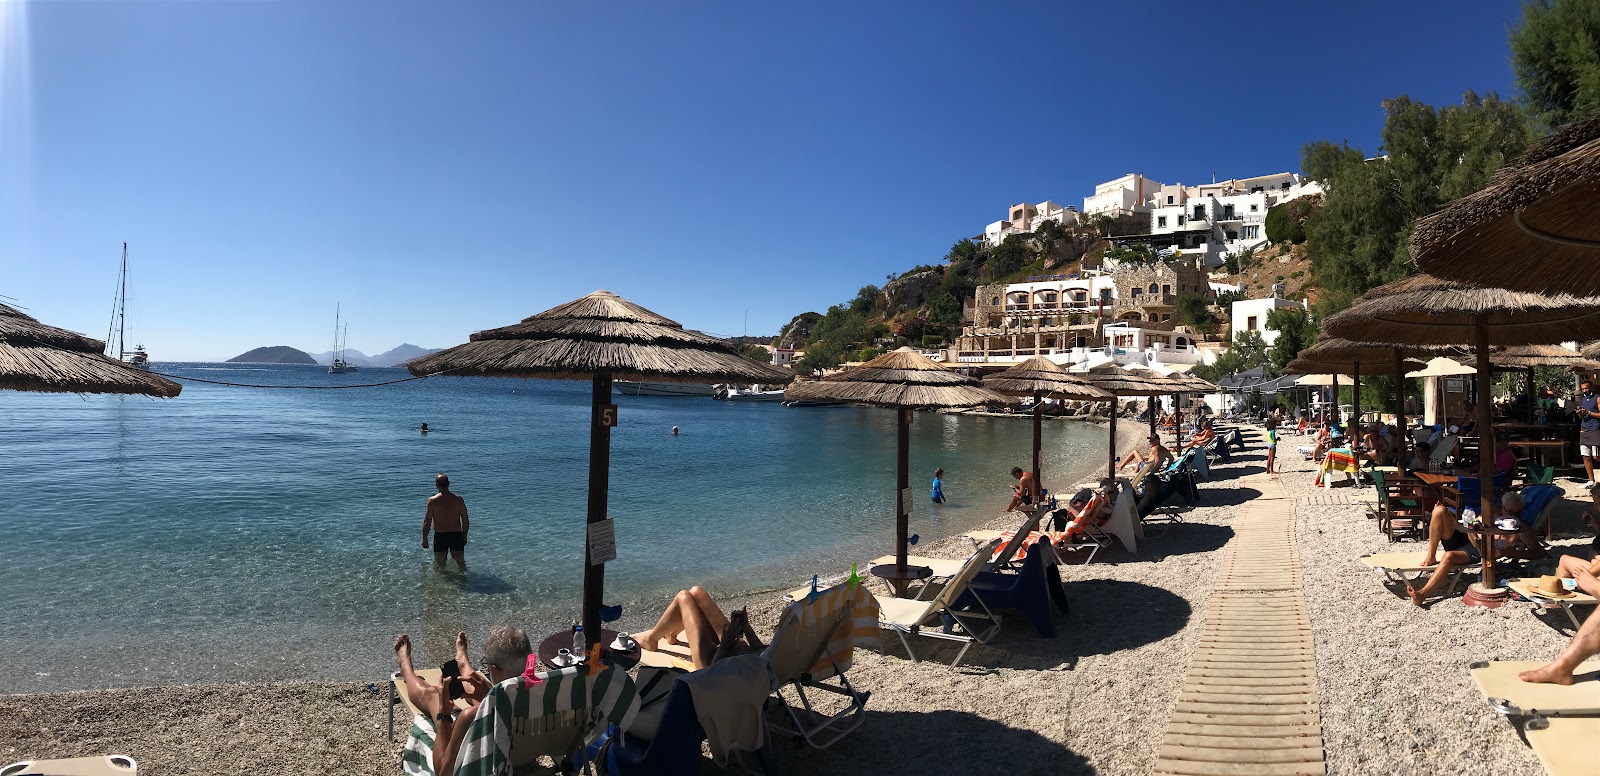 Zorbas Taverna beach'in fotoğrafı gri ince çakıl taş yüzey ile